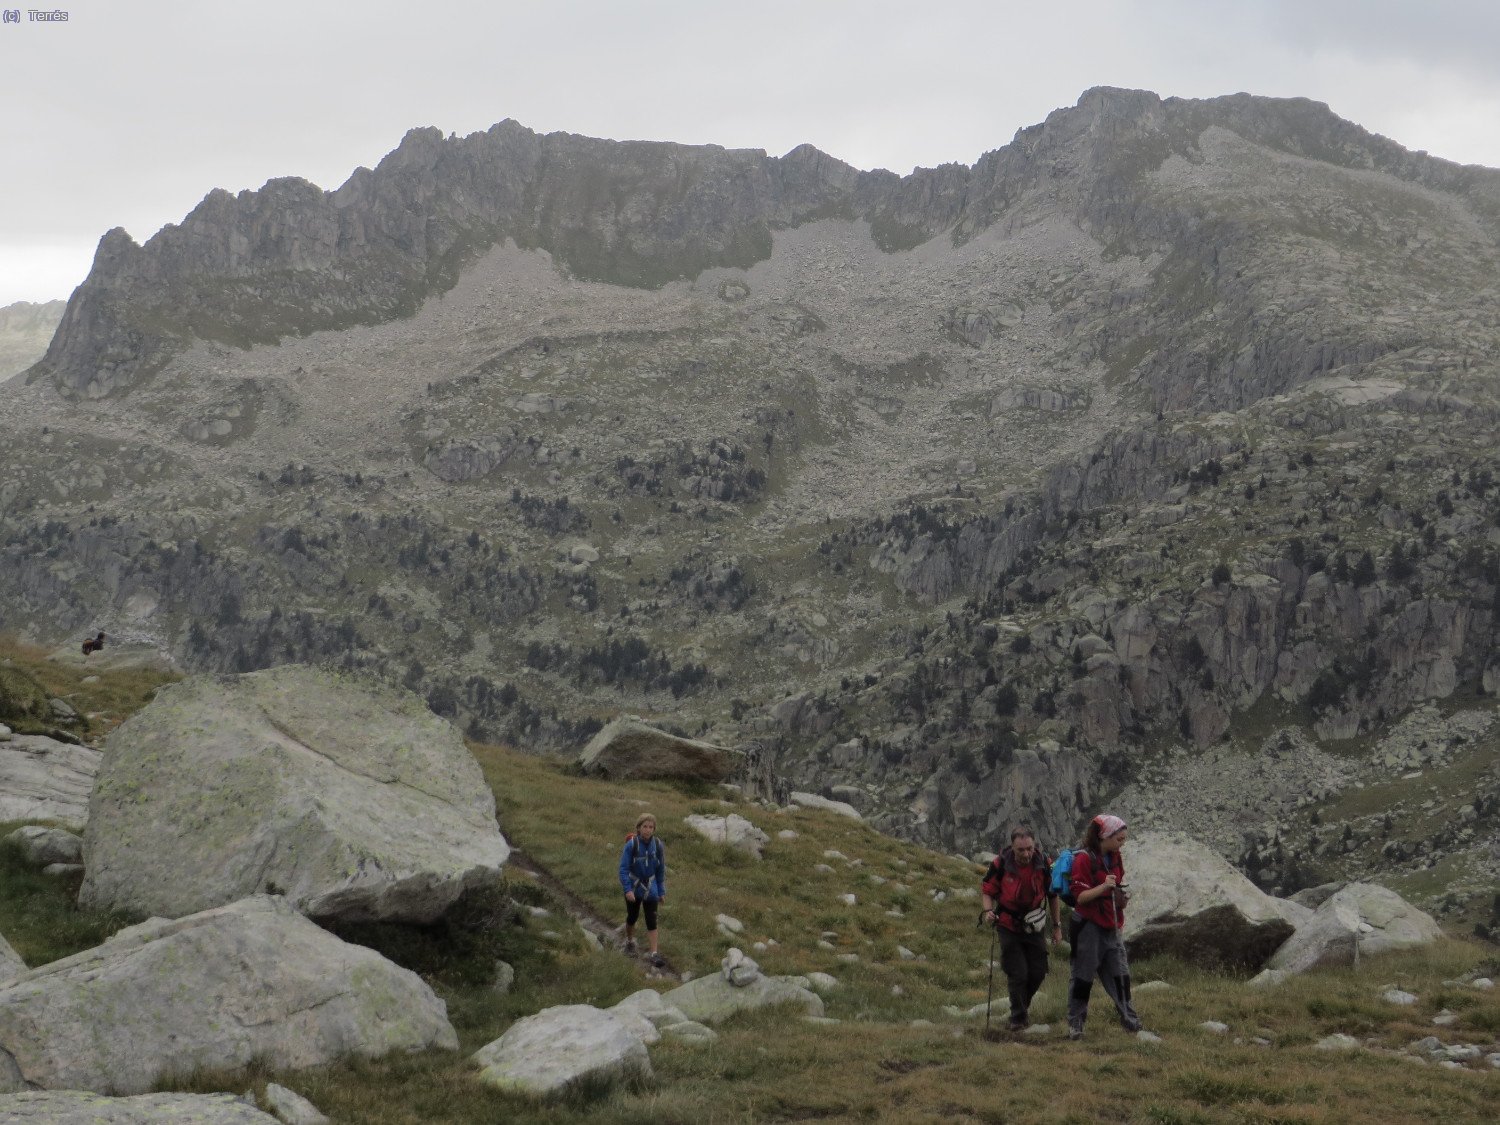 Llegando al Estany del Mamut o de La Roca, atrás quedan las Agujas de Travessani a la izquierda y Pic de La Tallada Llarga a la derecha